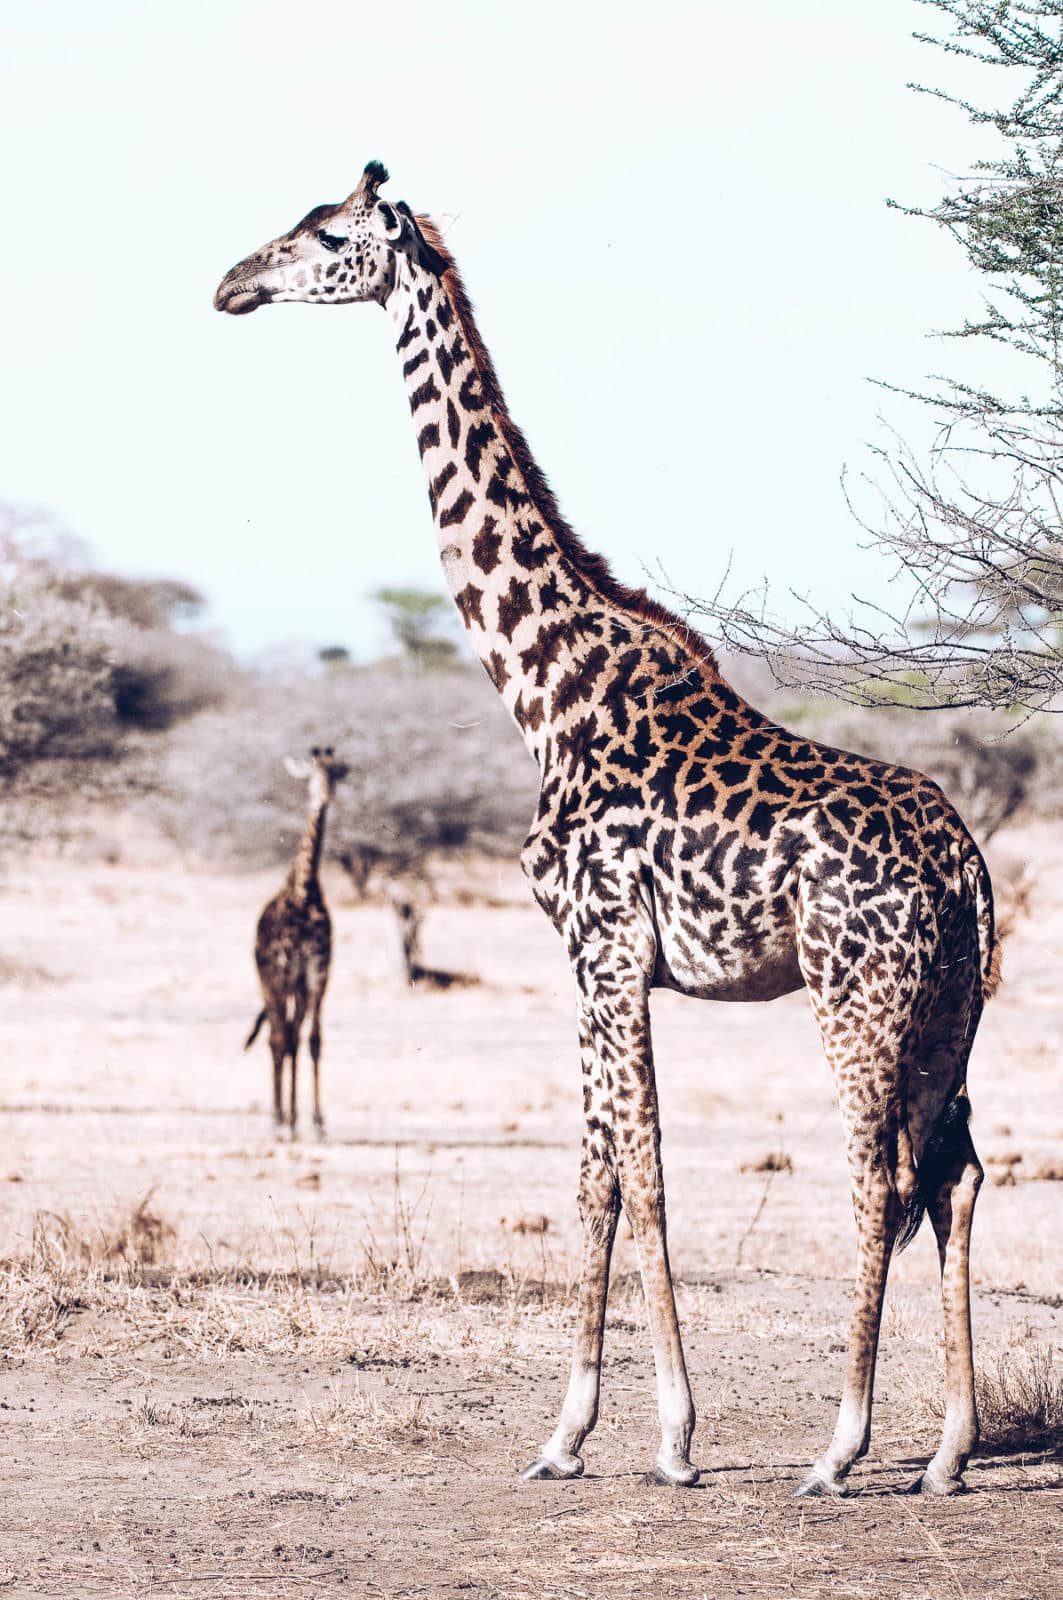 a Masai giraffe